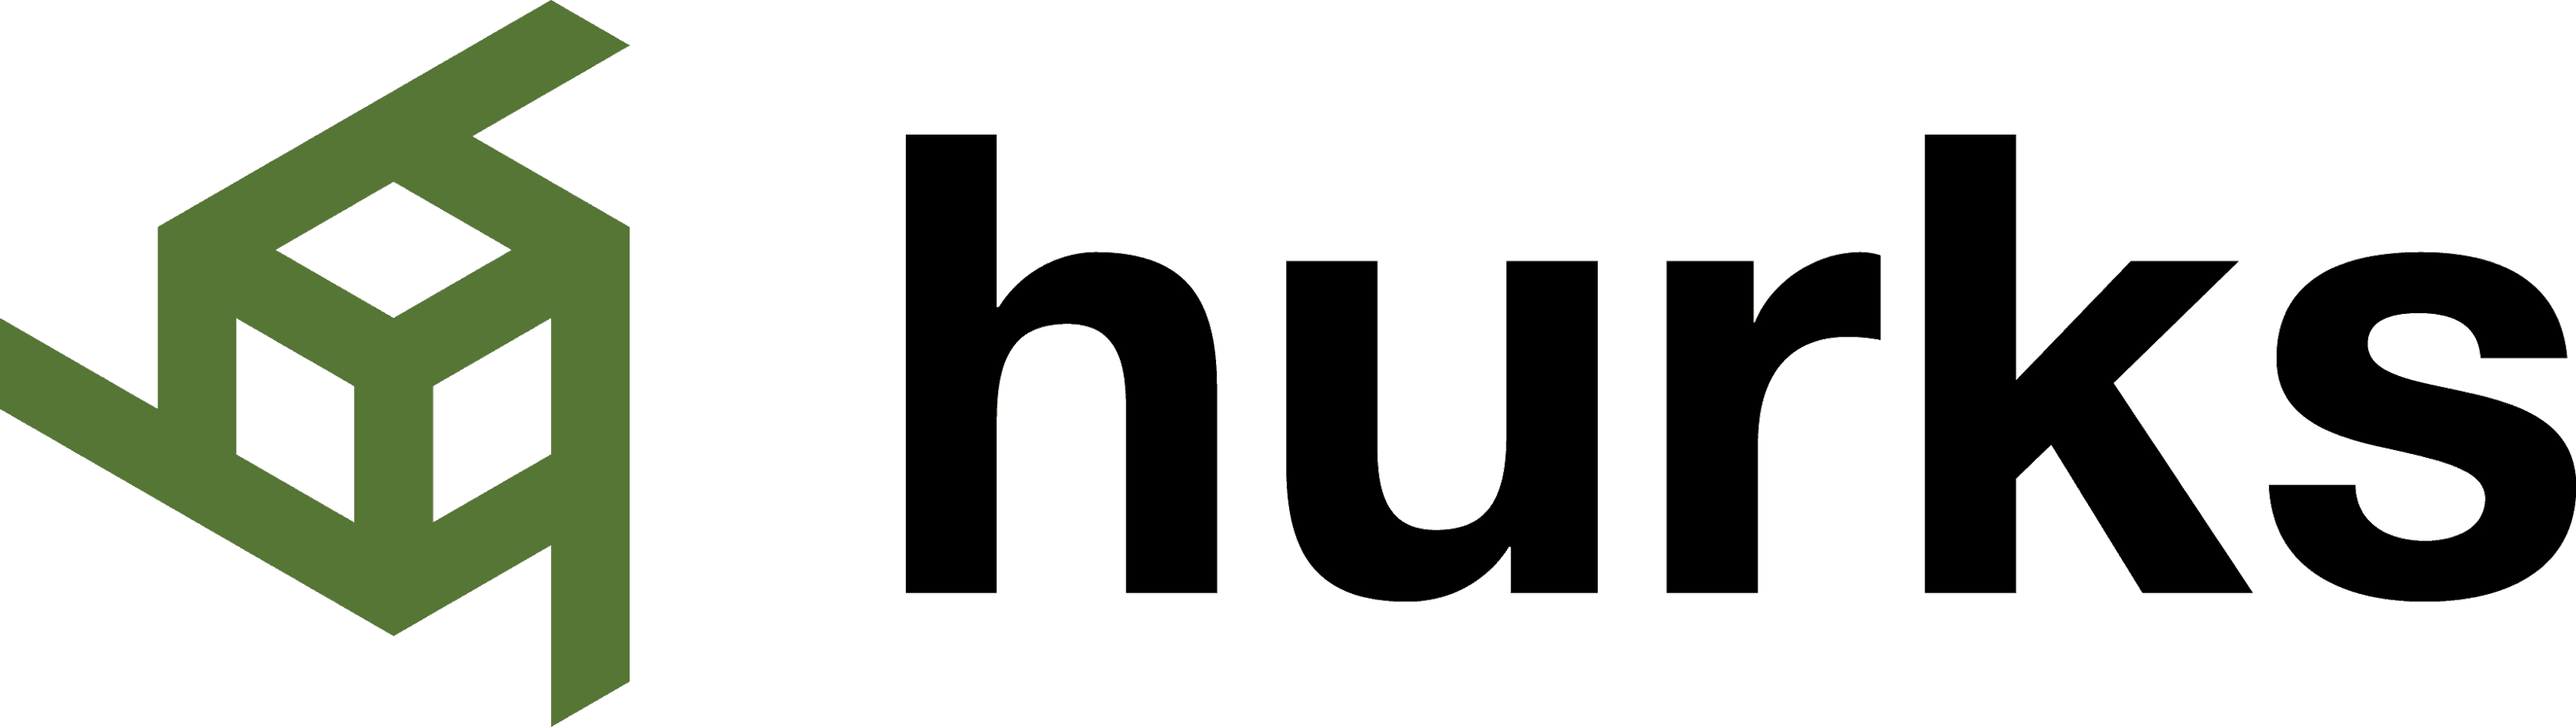 Logo Hurks transparant